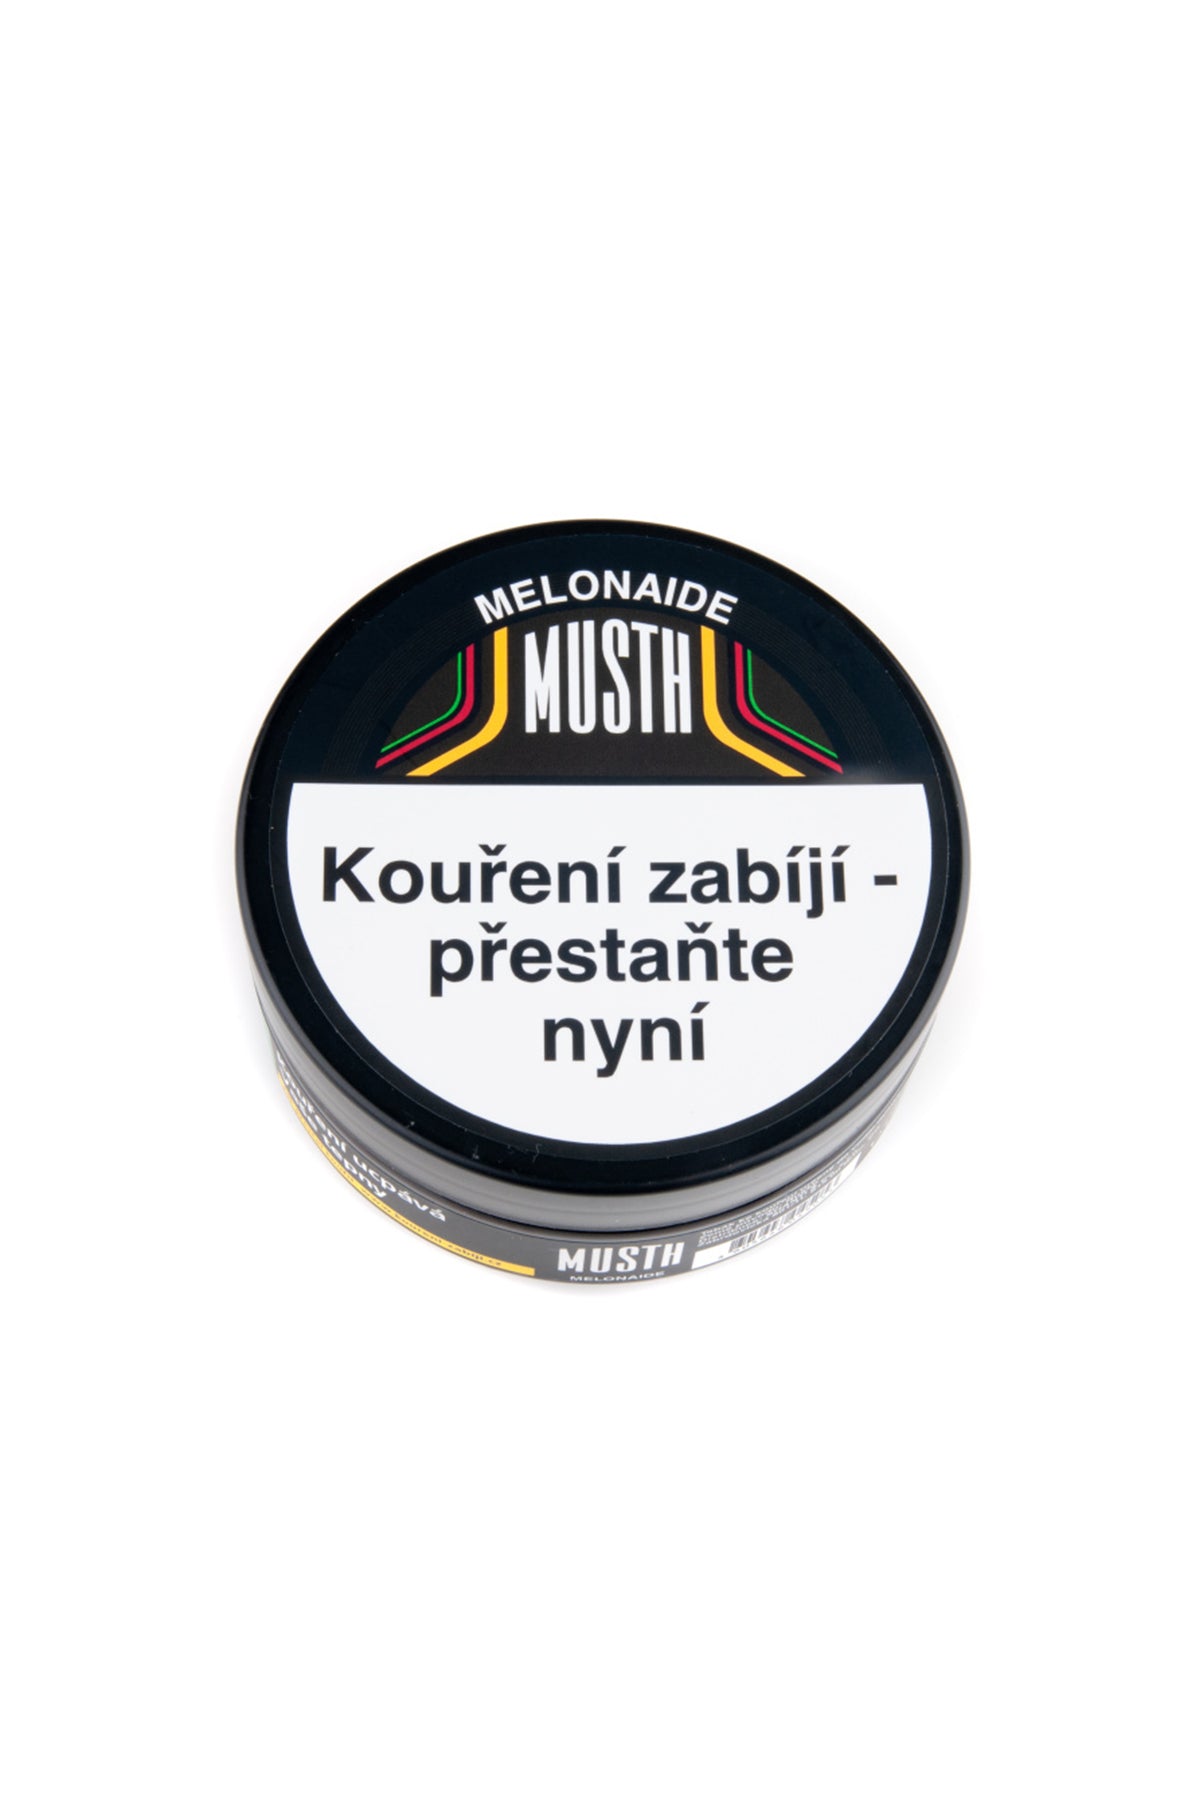 Tabák - MustH 125g - Melonaide